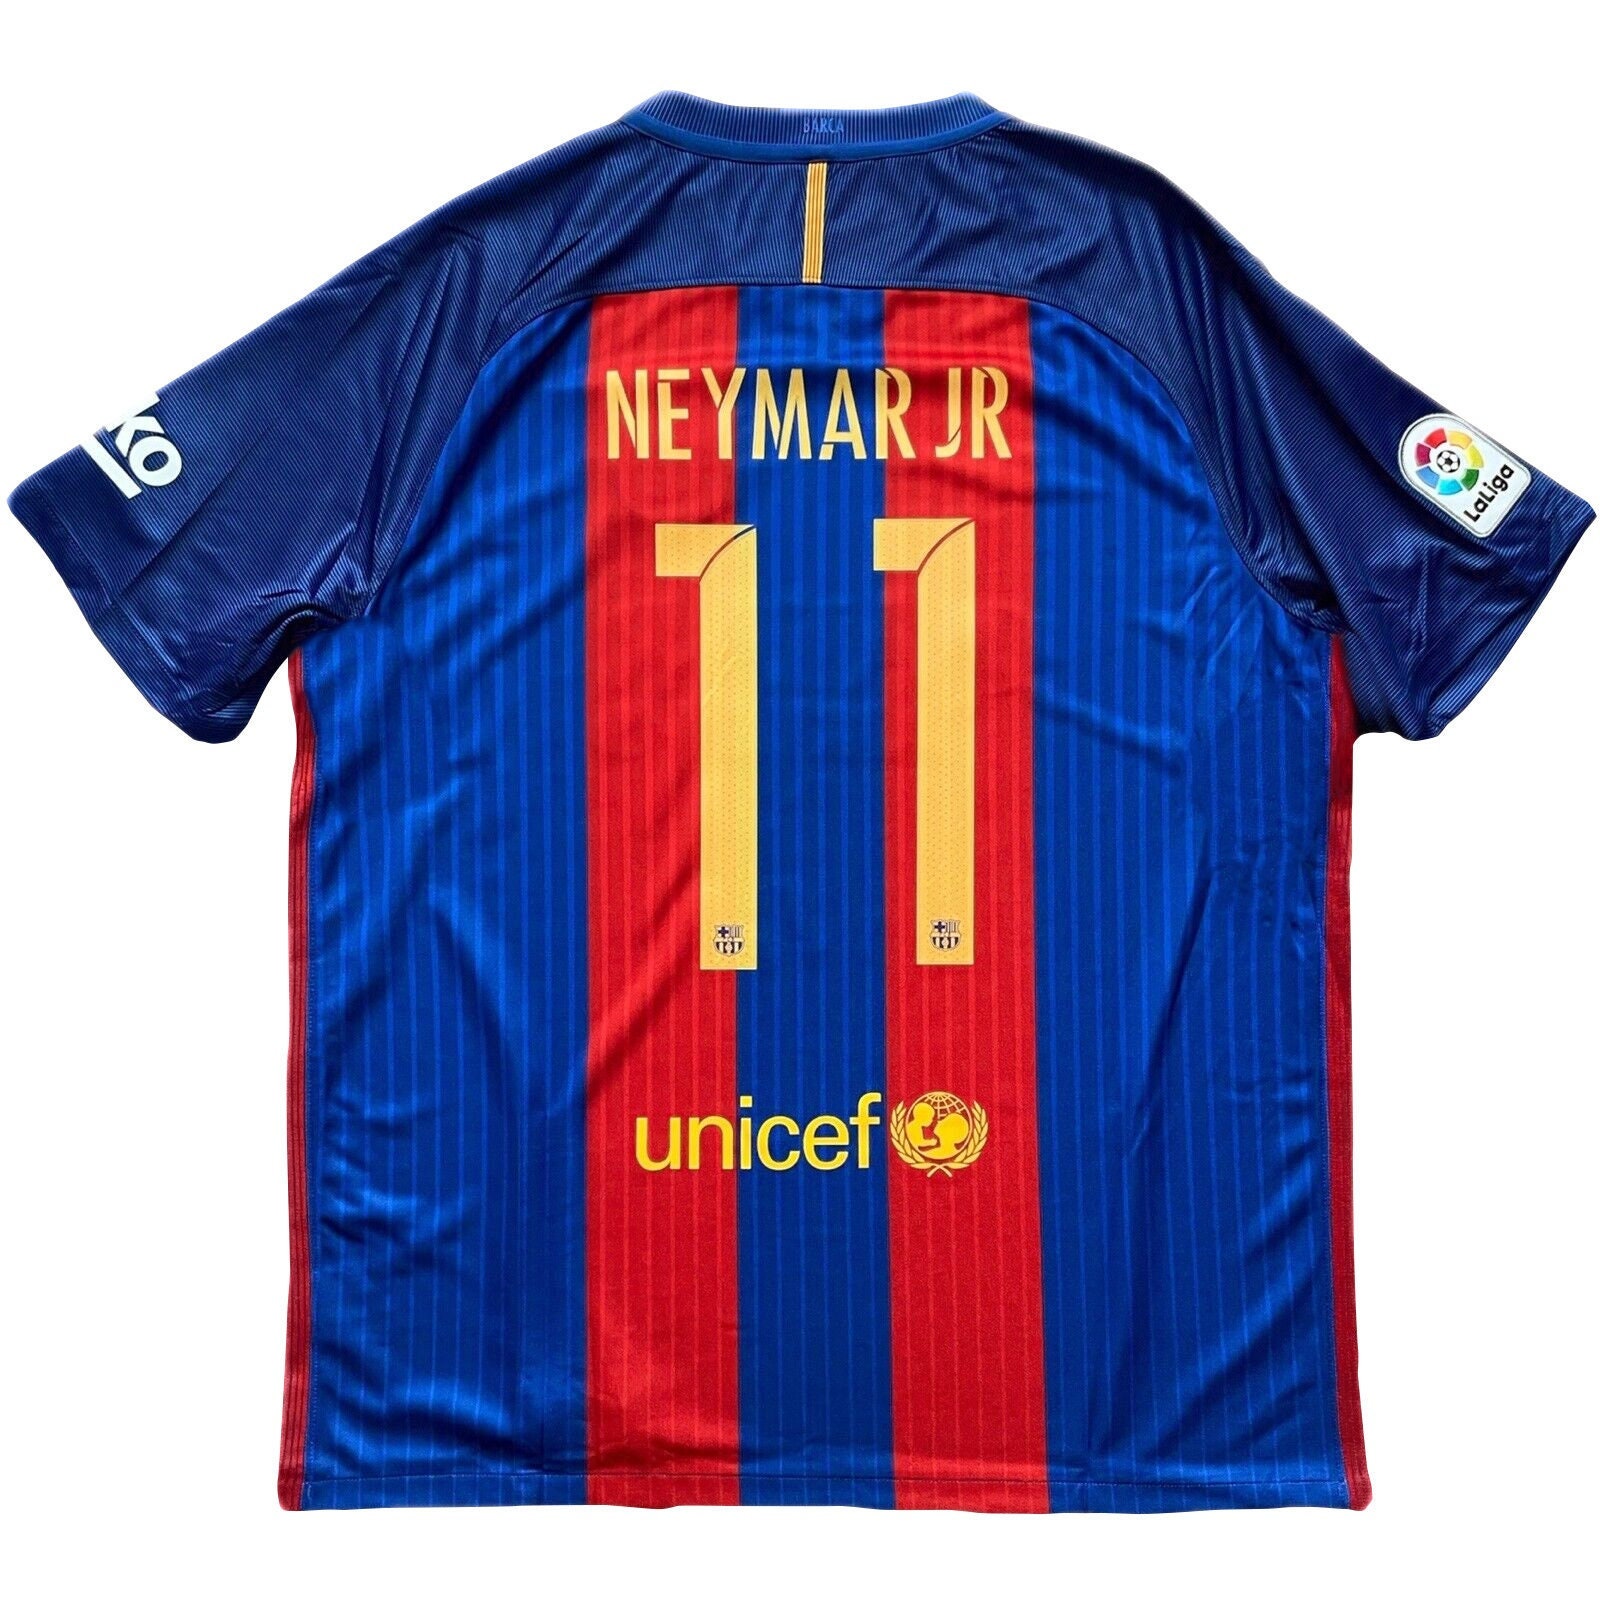 kruising Veeg in plaats daarvan Barcelona 2016 2017 Neymar 11 Thuis voetbalshirt voetbalshirt - Etsy  Nederland